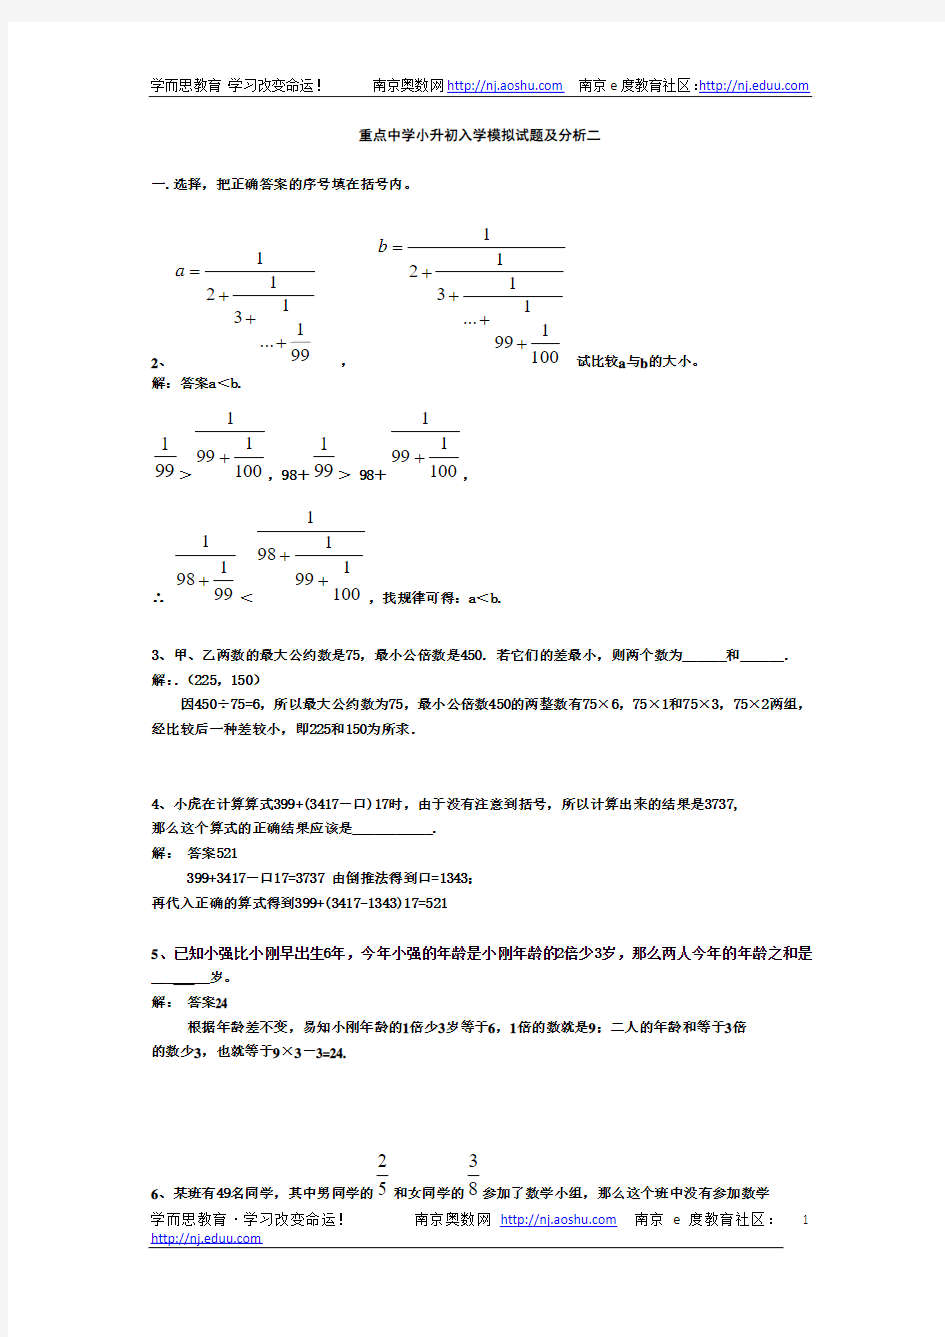 2011年小升初数学分班考试题及答案详解(二)(1)